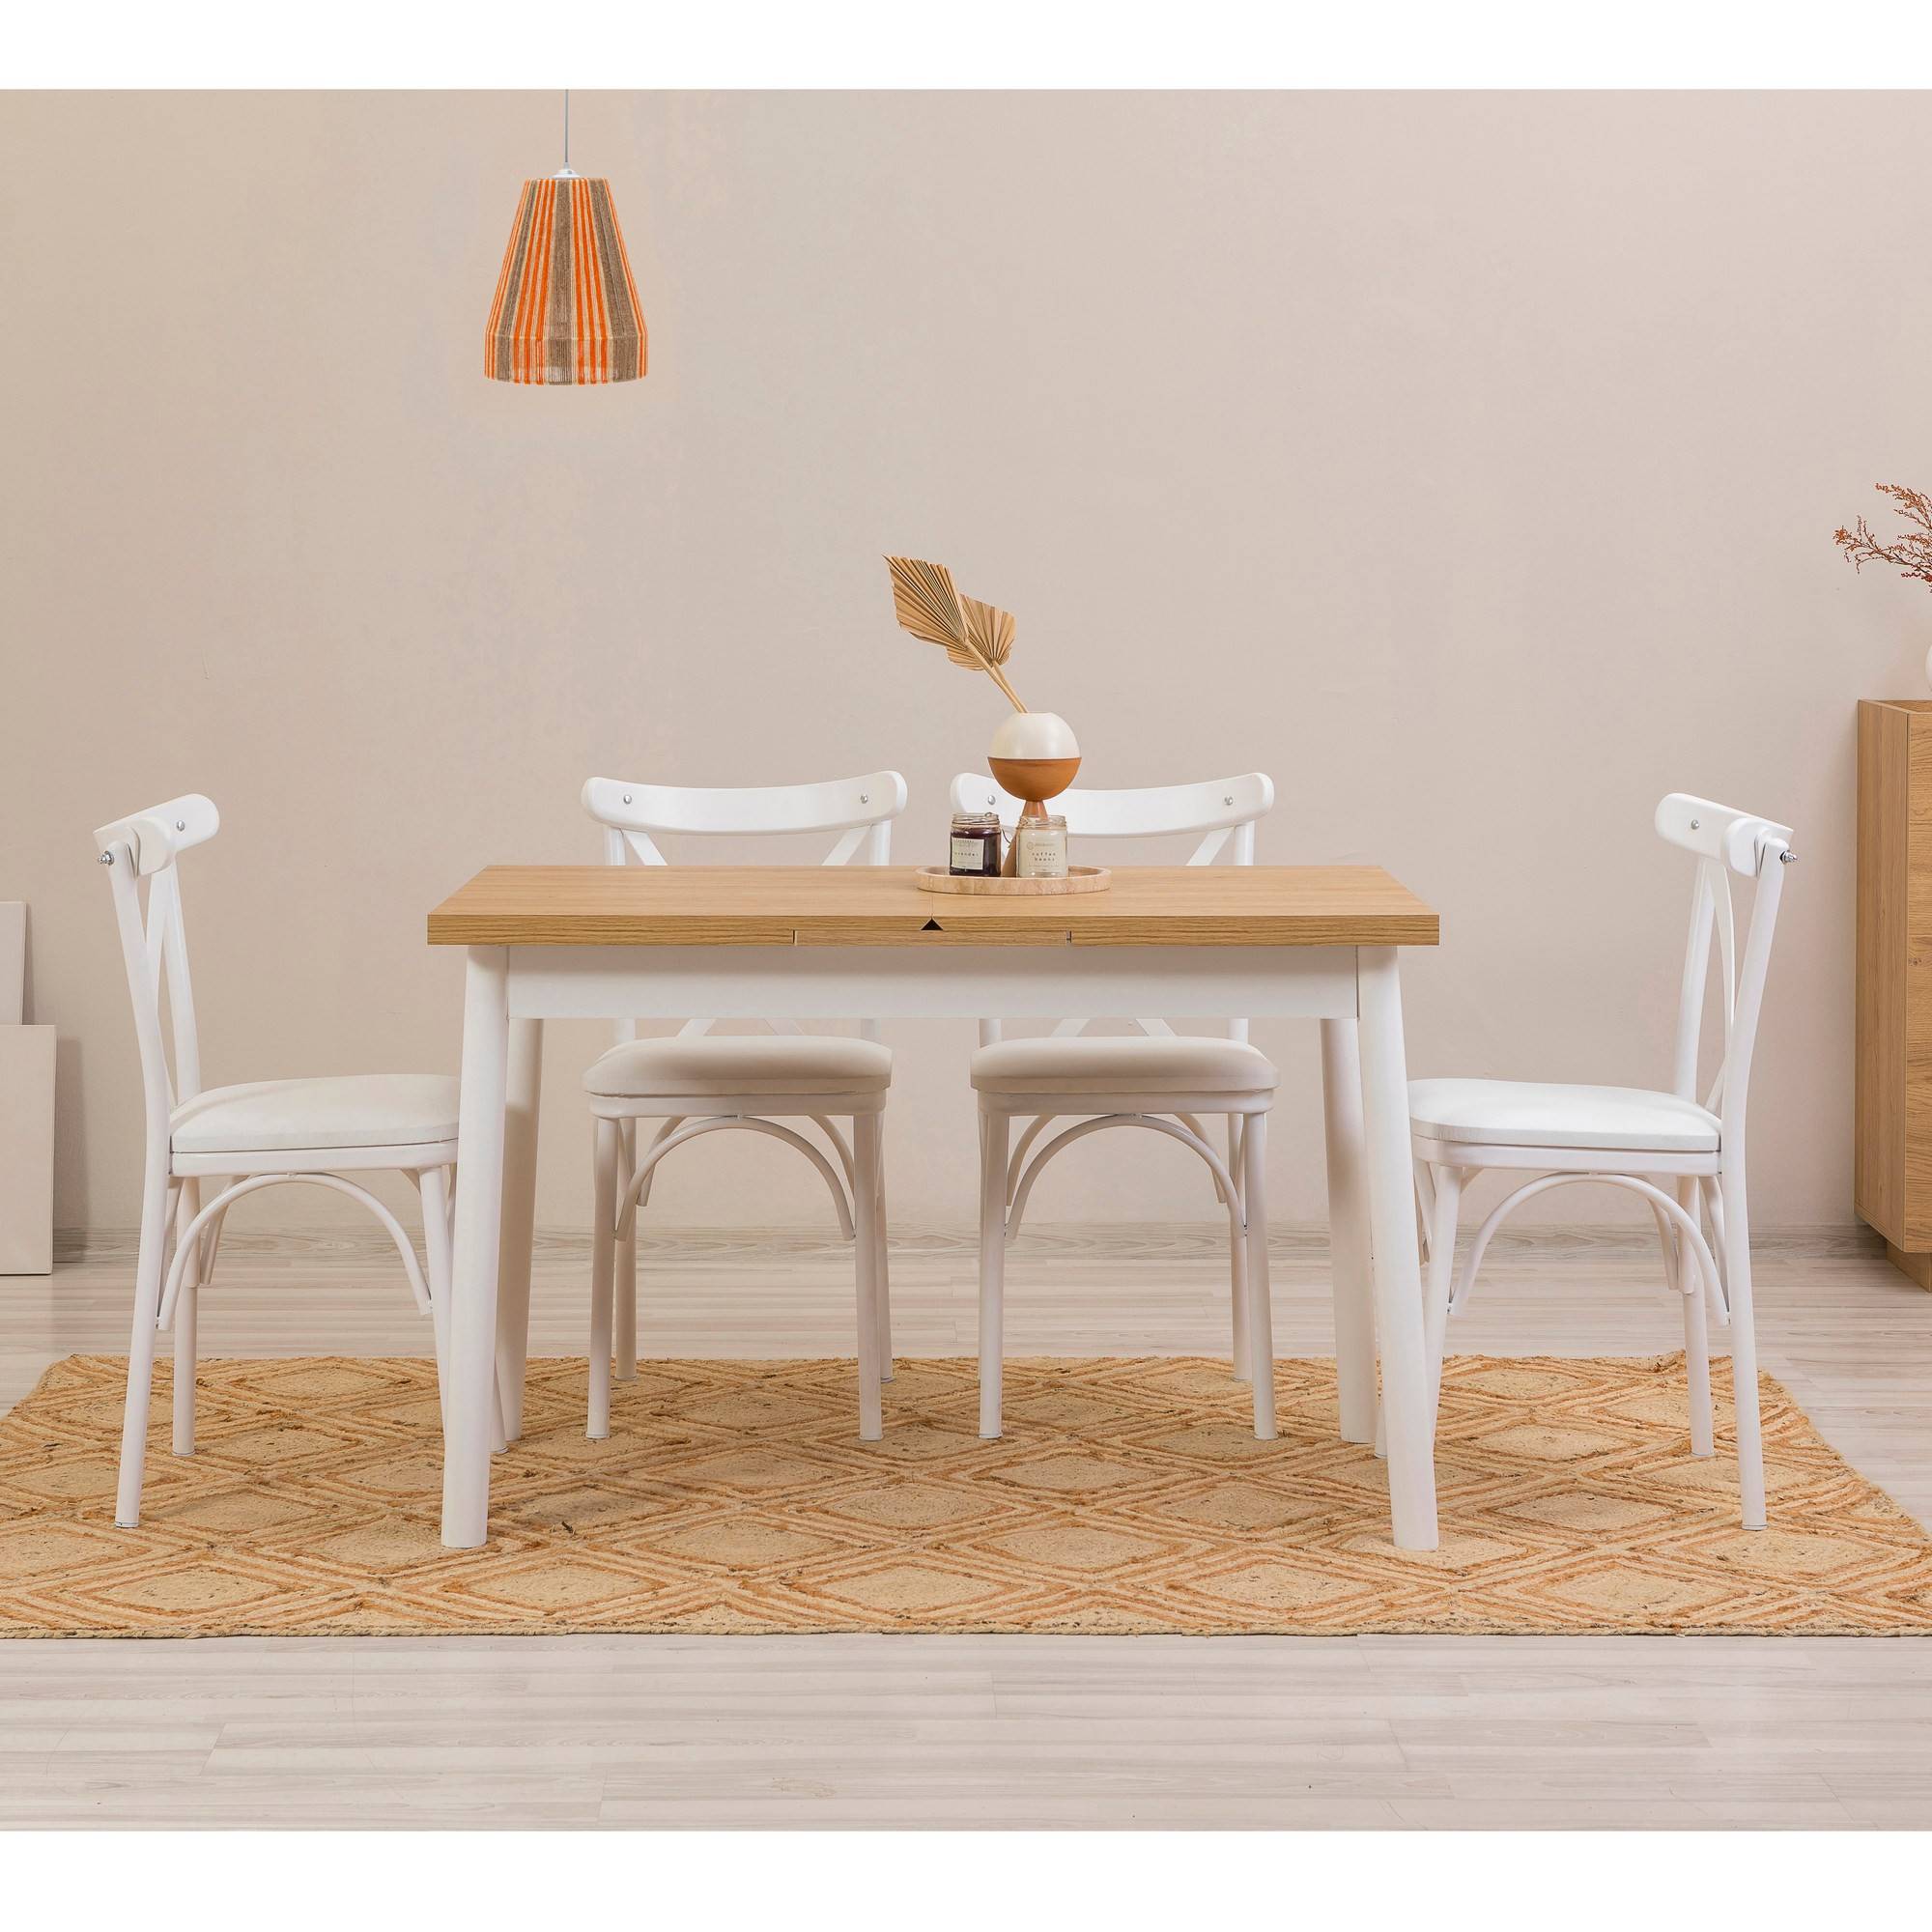 Set aus 4 Stühlen Weiß und 1 ausziehbaren Tisch Iridus Weiß und helles Holz